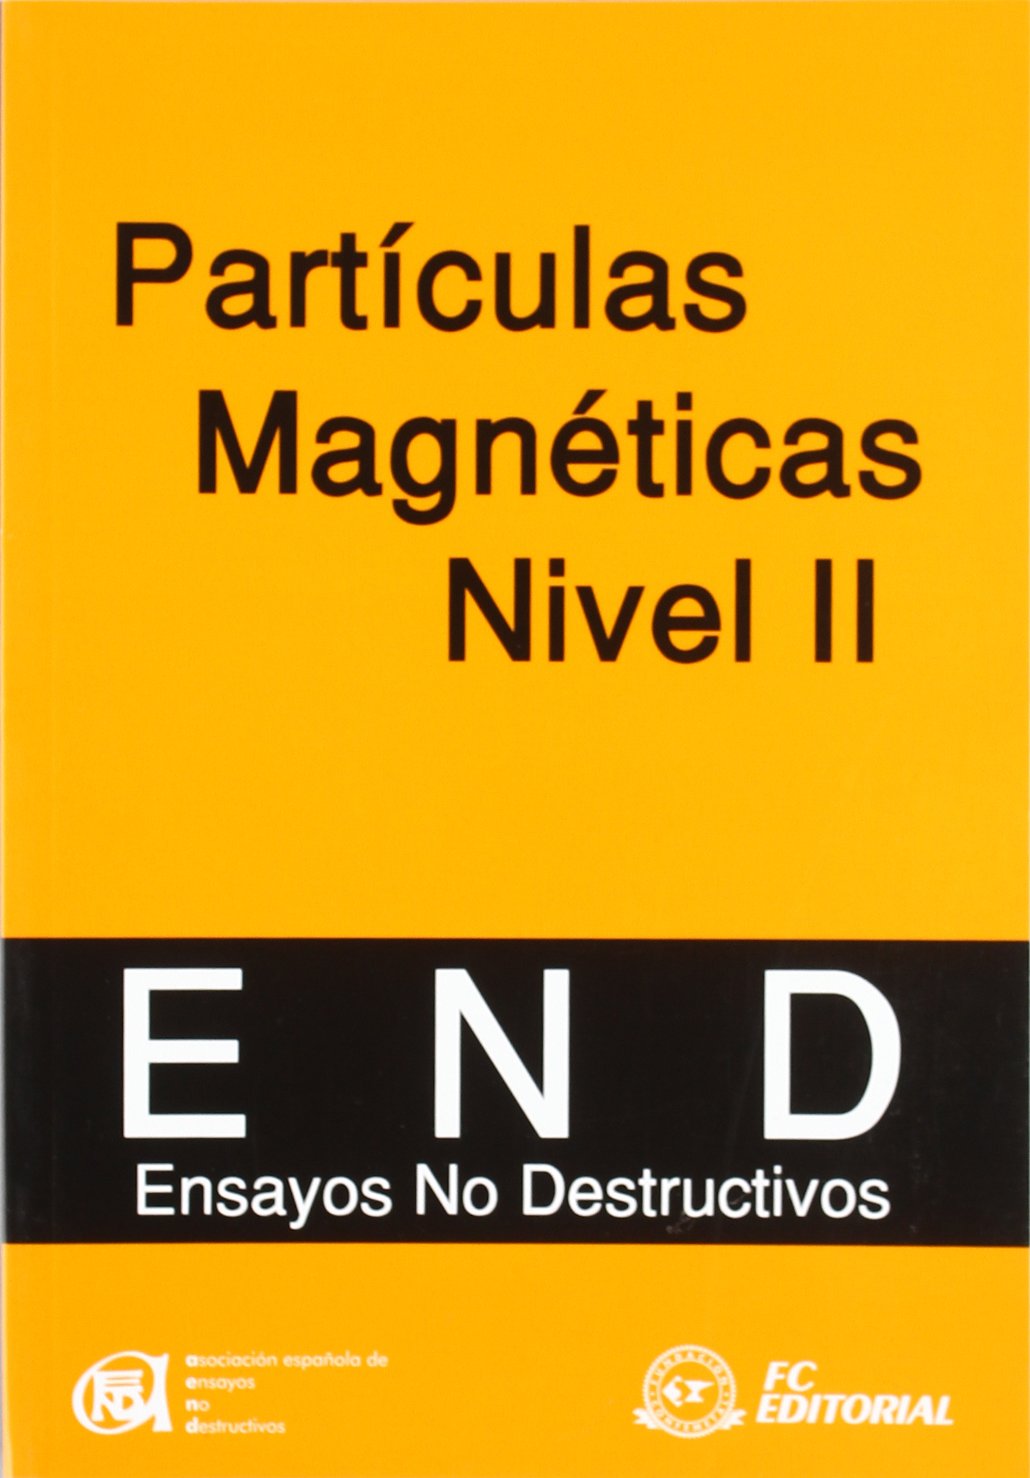 Partículas Magnéticas Nivel II 9788495428721